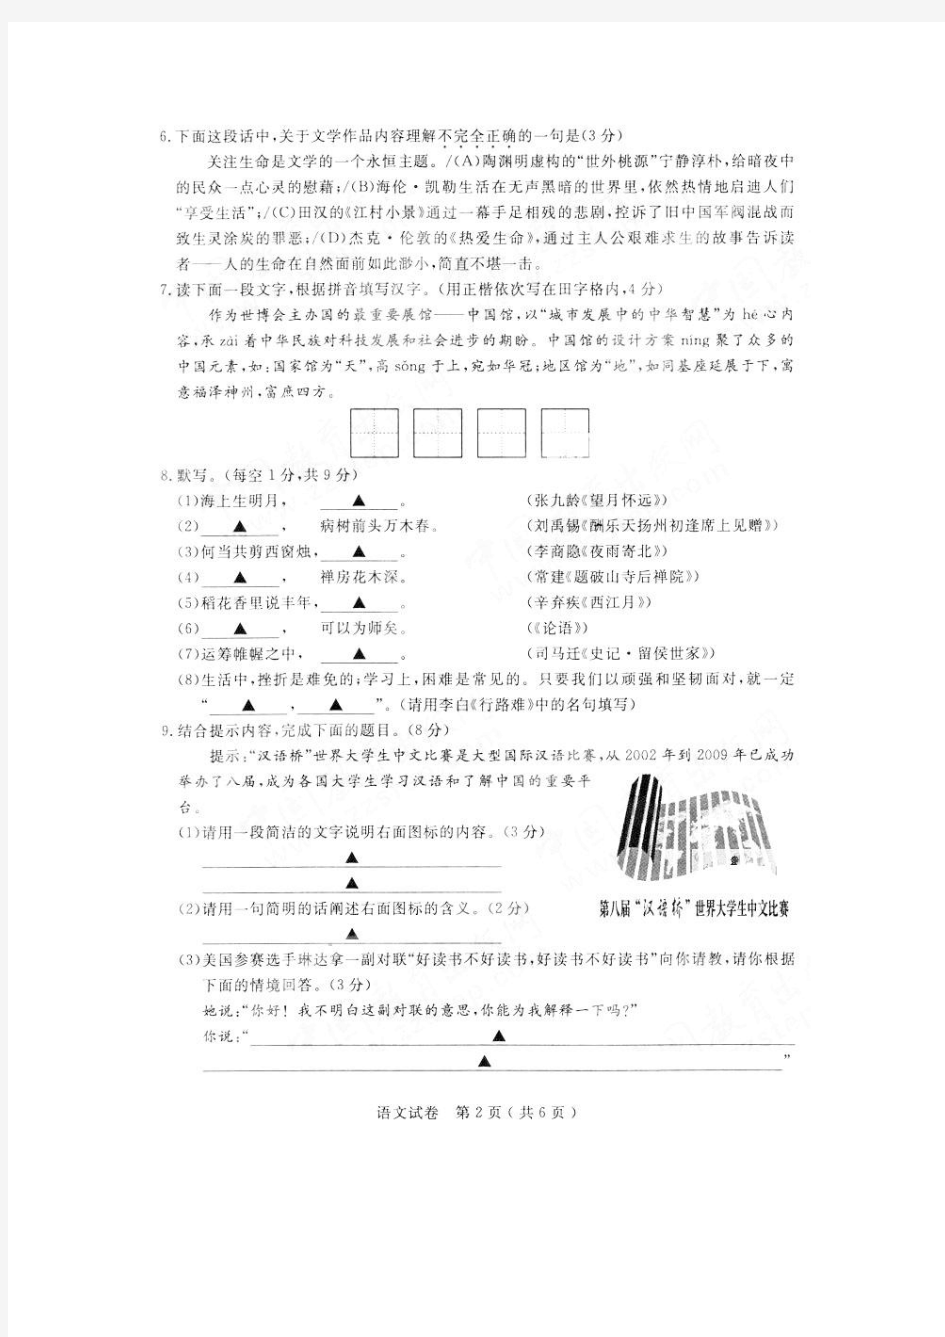 江苏 扬州--2010年中考语文试题120套余映潮收集整理